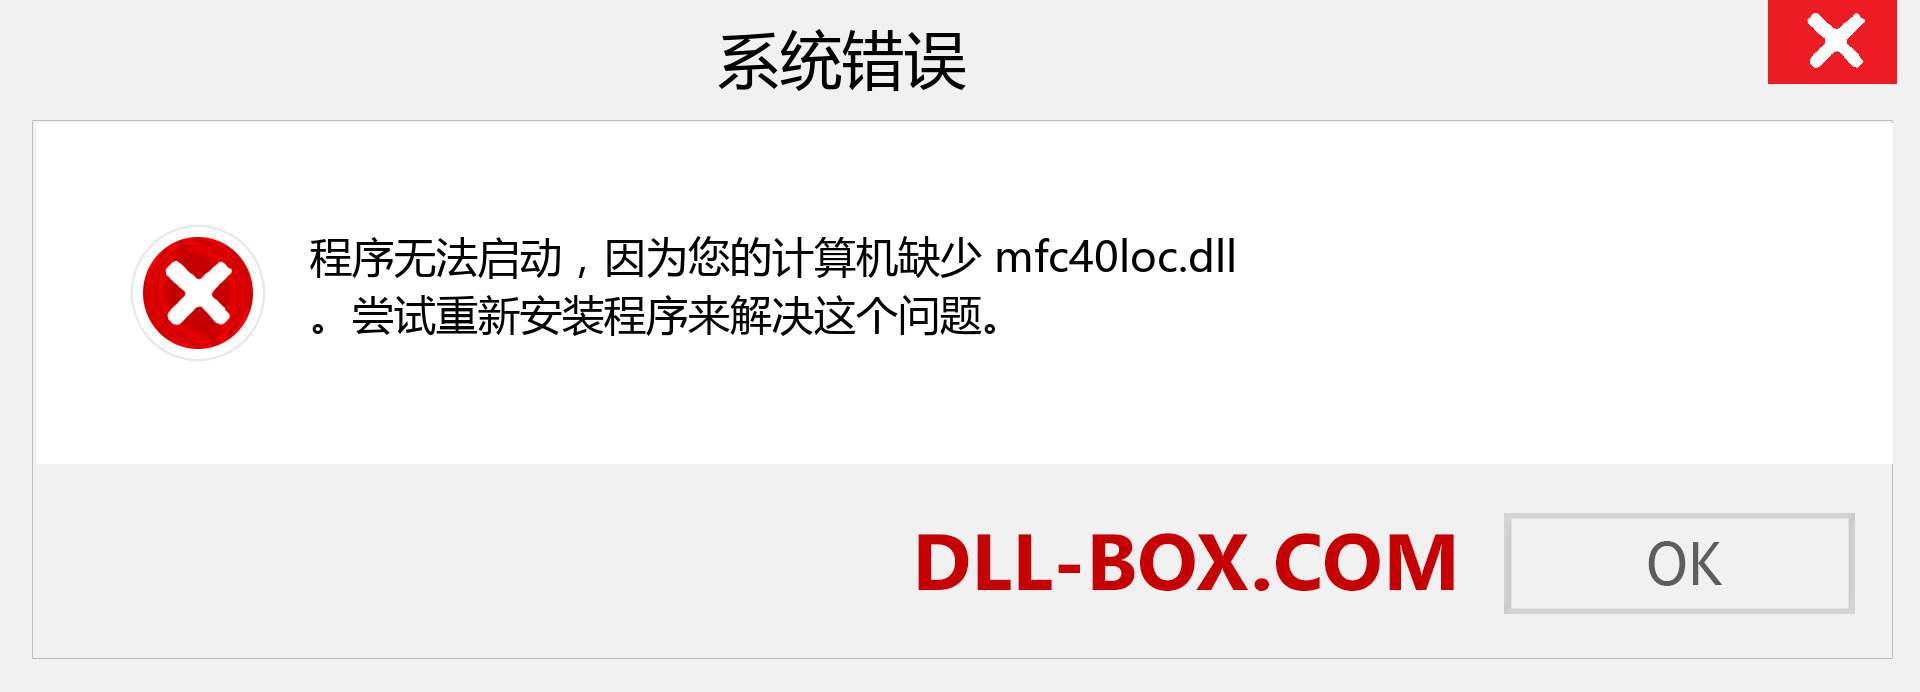 mfc40loc.dll 文件丢失？。 适用于 Windows 7、8、10 的下载 - 修复 Windows、照片、图像上的 mfc40loc dll 丢失错误